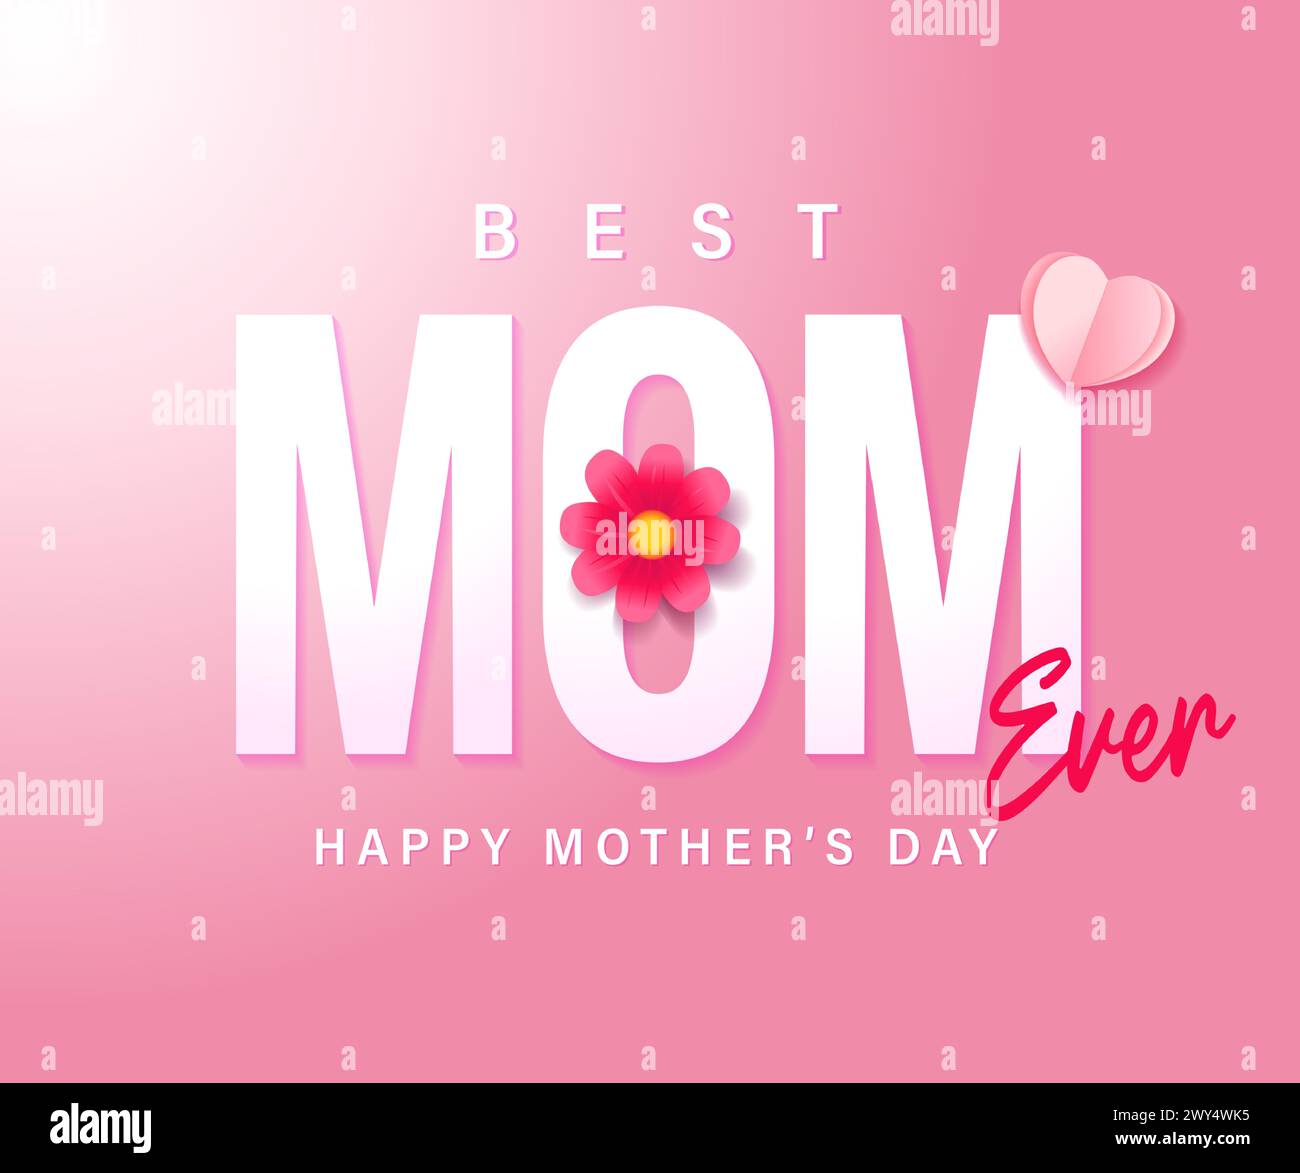 Meilleure maman jamais, carte de fête des mères heureuse avec fleur et coeur. Je t'aime maman, concept d'offre spéciale. Illustration vectorielle Illustration de Vecteur